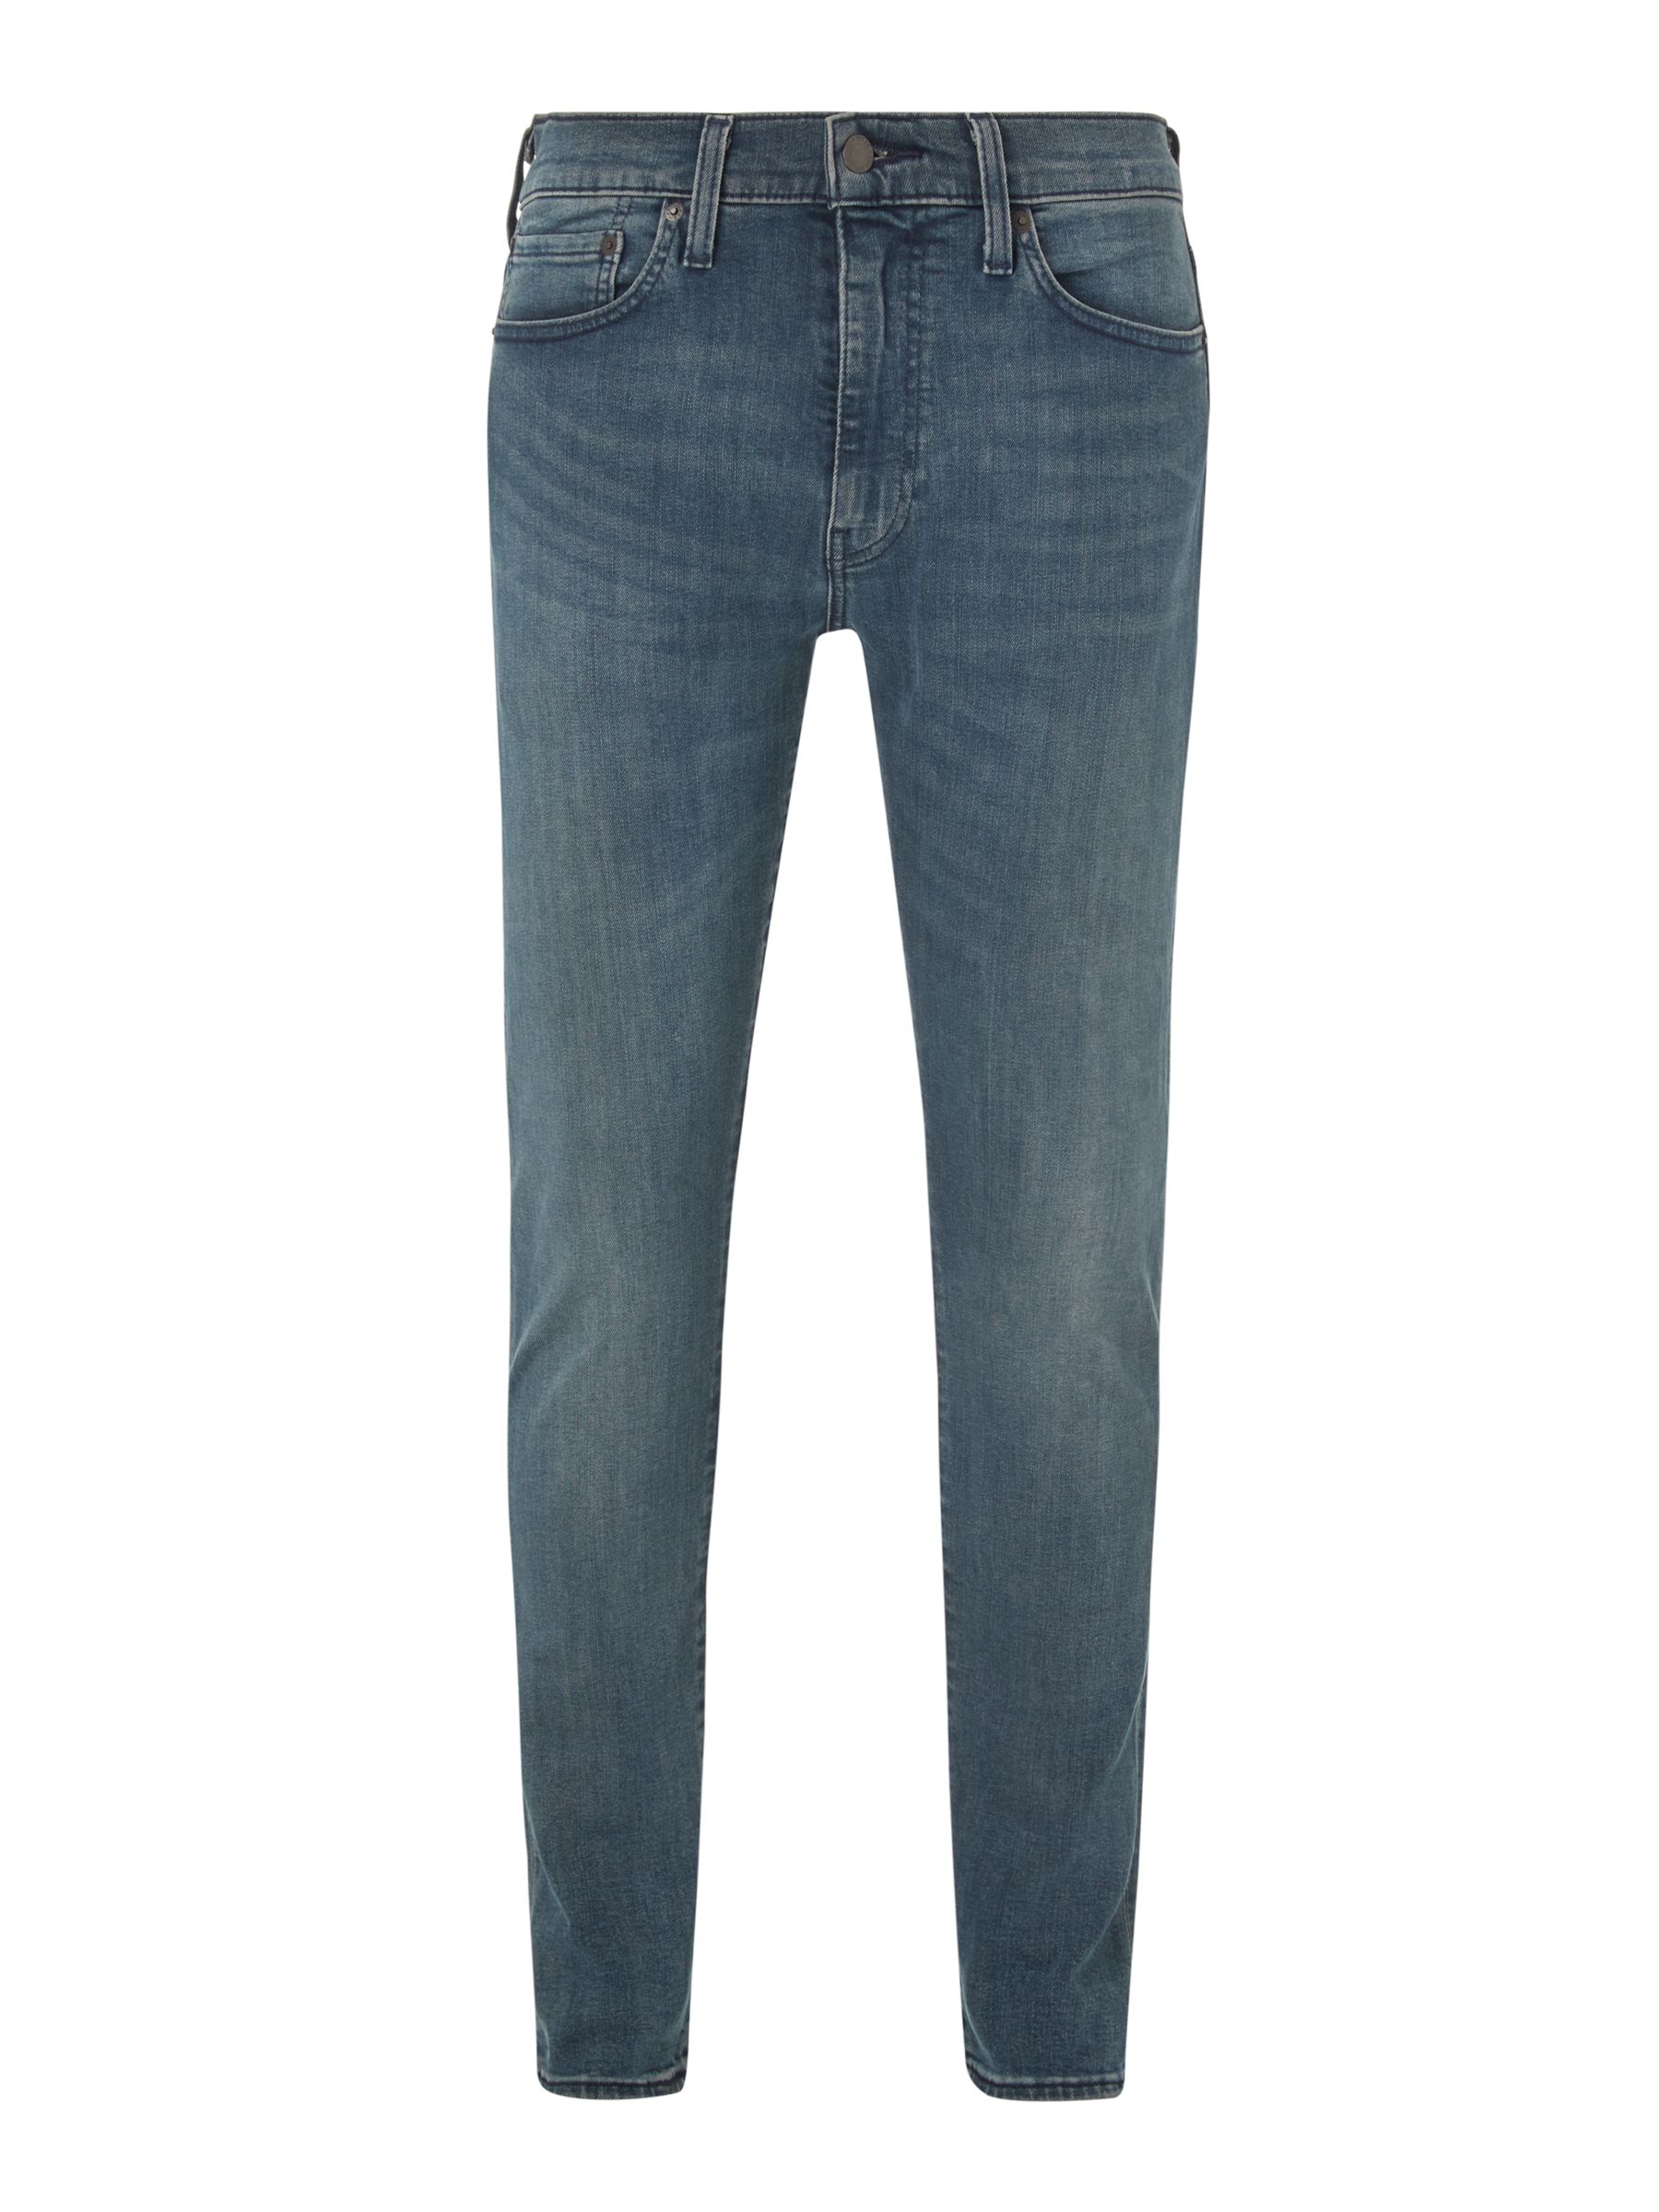 Levi's 512 Slim Tapered Jeans, Sage Medium Blue